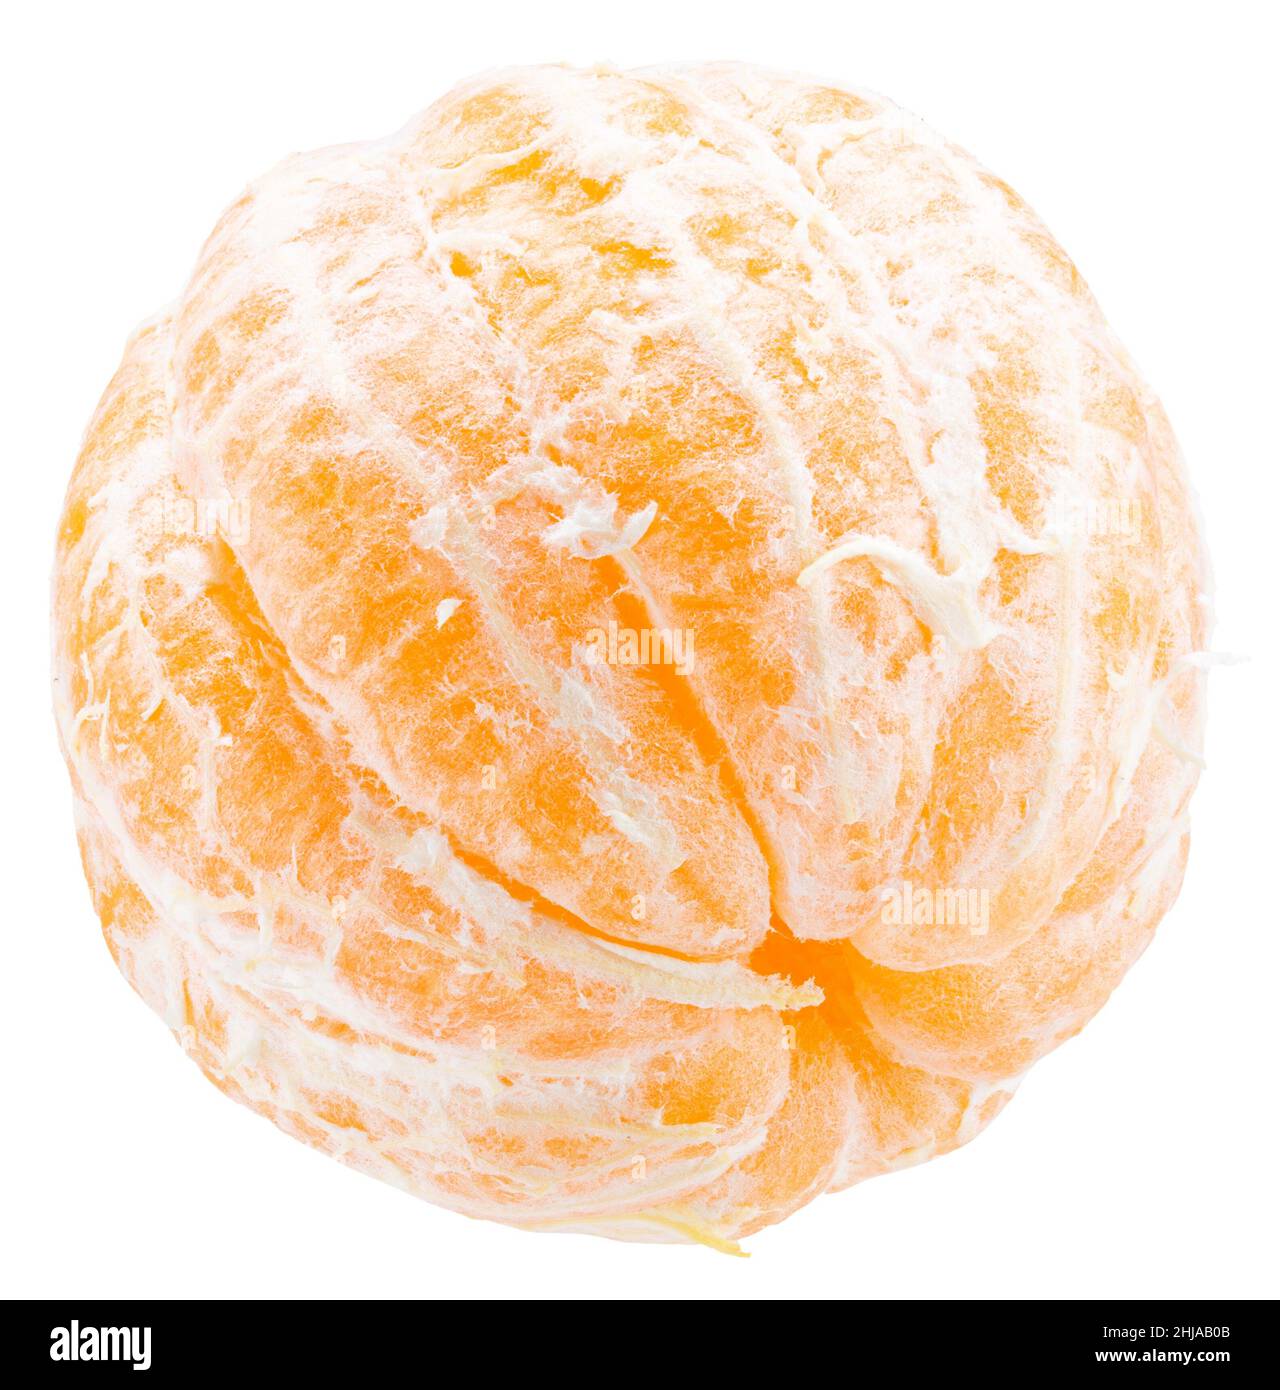 segmenti pelati di mandarino dolce isolati su sfondo bianco con percorso di taglio. Foto Stock